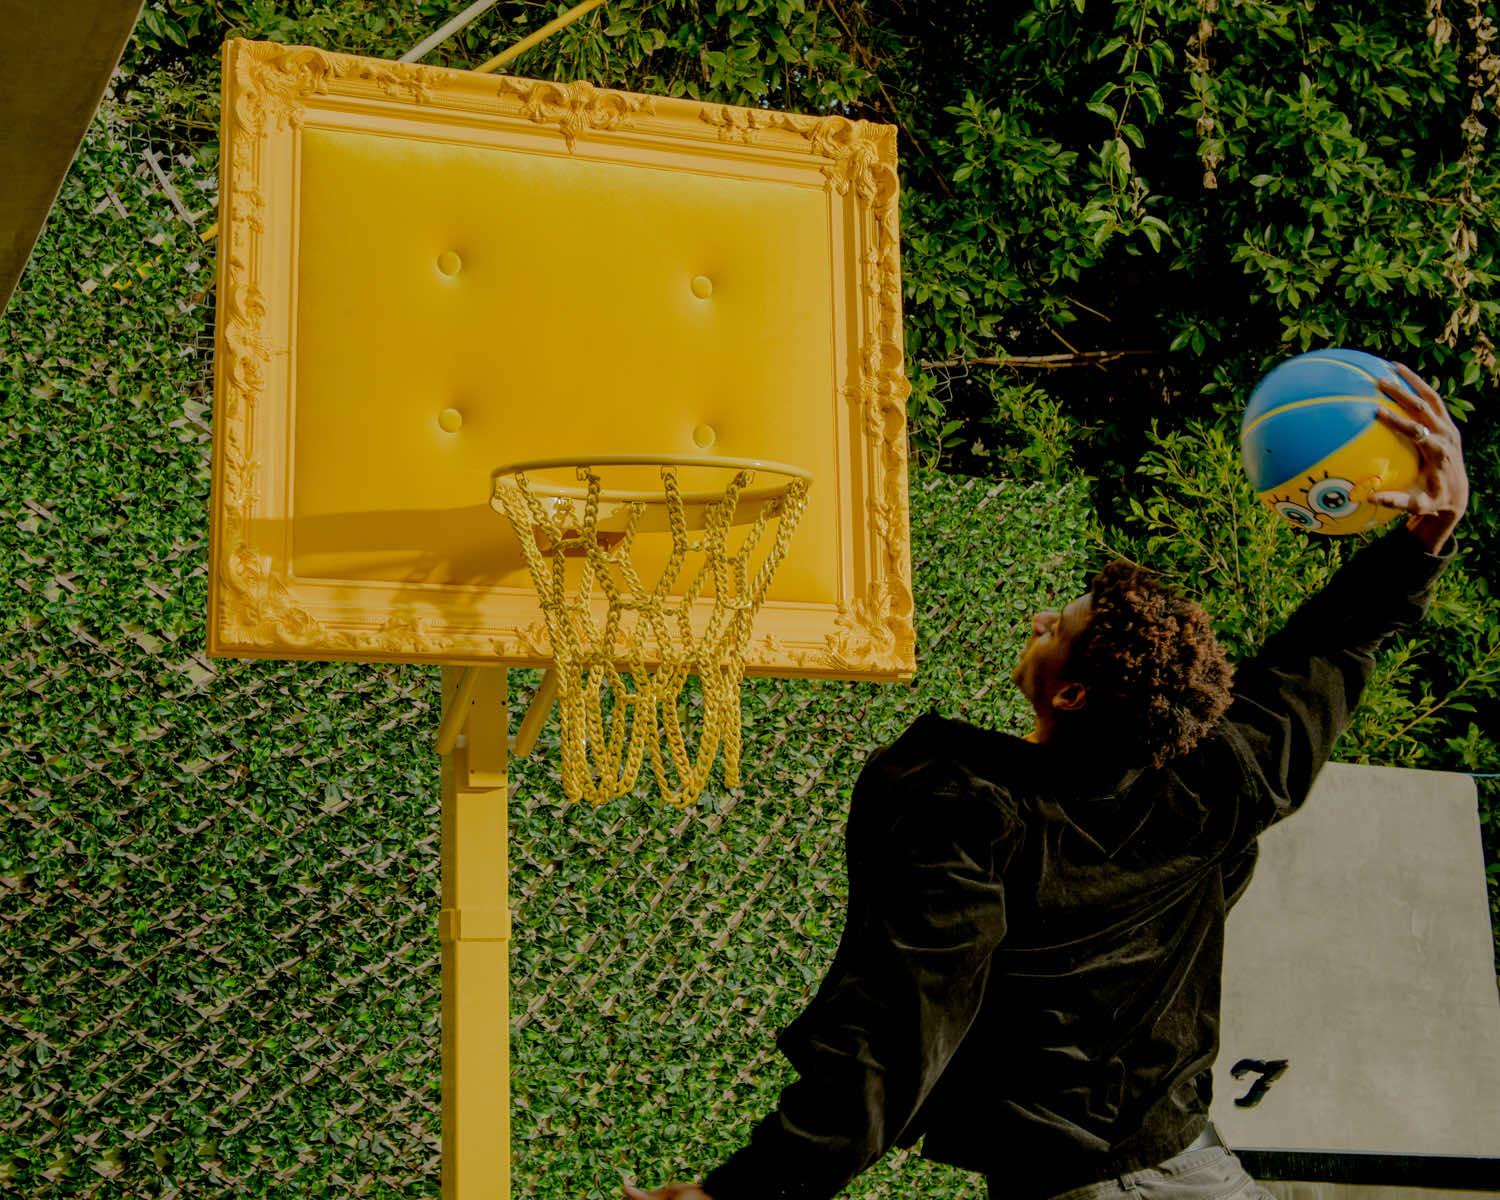 A man jumping over a basketball hoop.